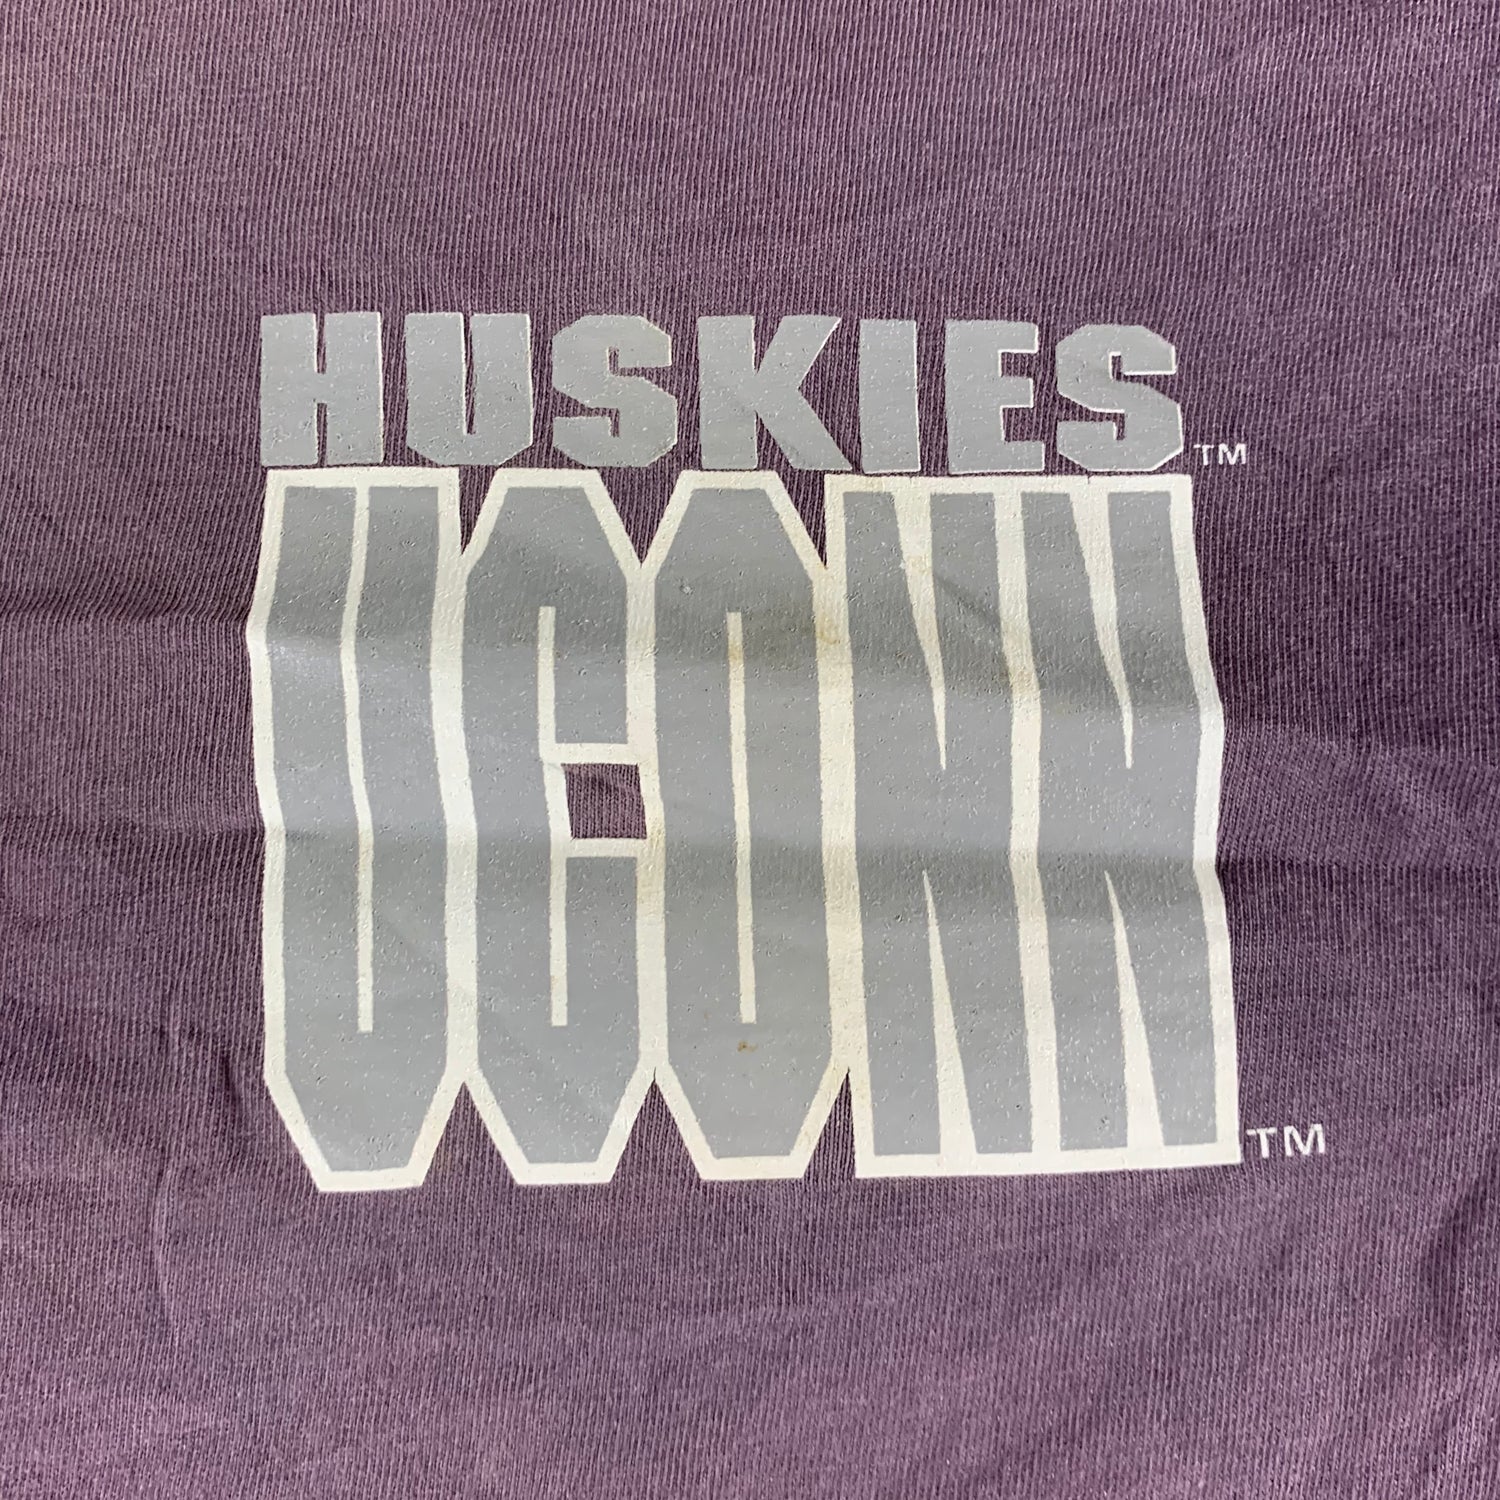 Vintage 1990s University of Connecticut T-shirt size Large